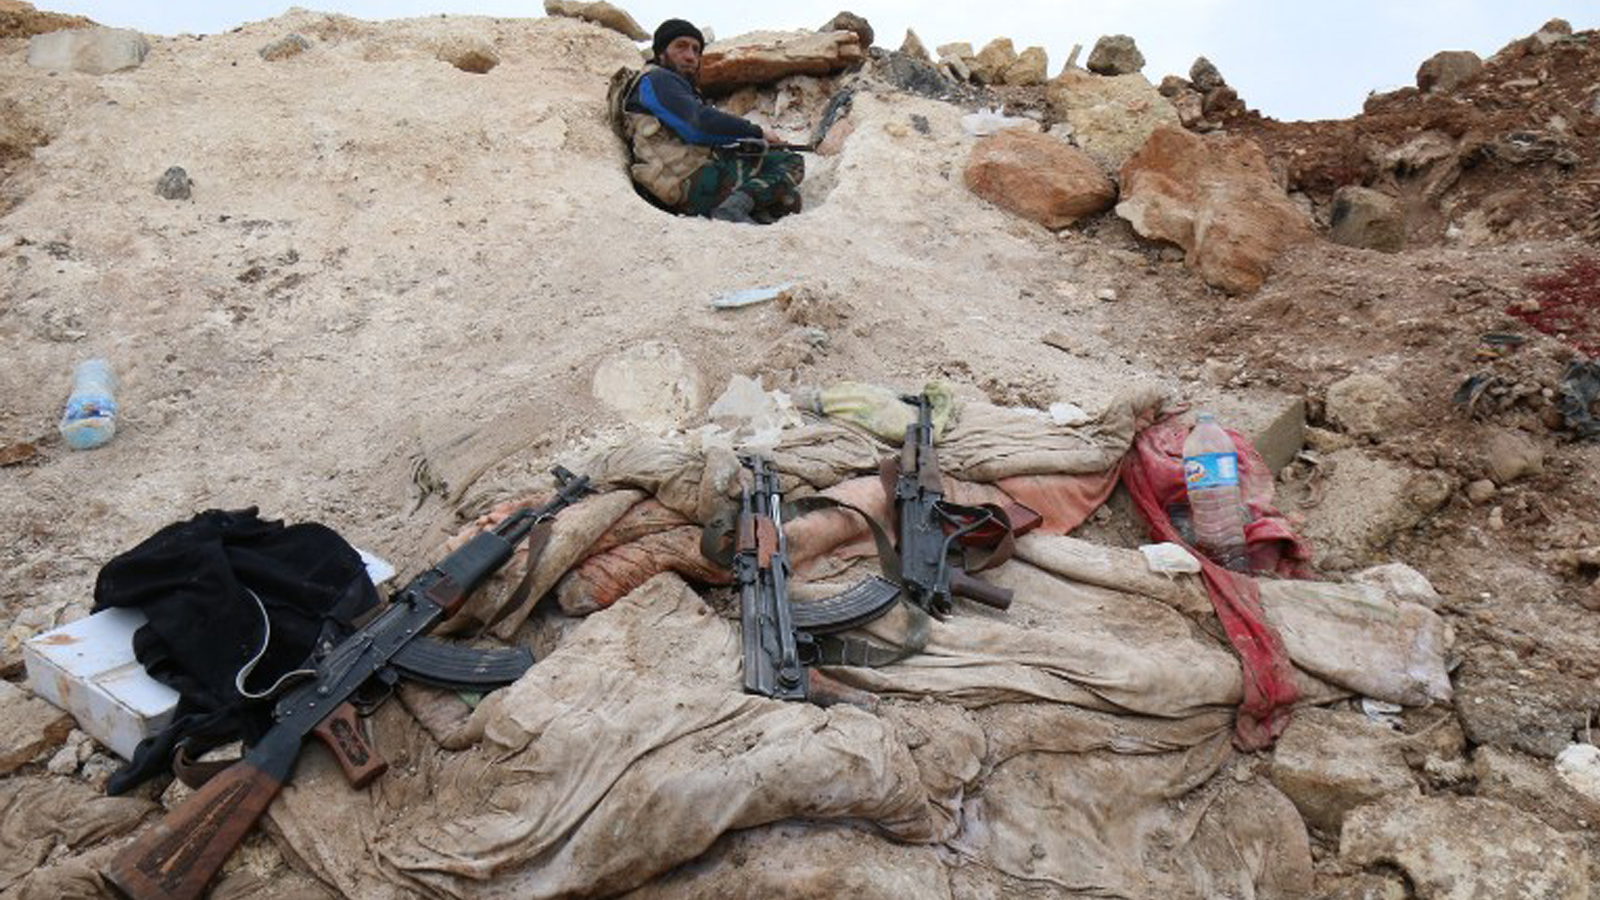 "جيش الشام".. اجتماع الفصائل الصغرى استجابة لخطر "داعش"